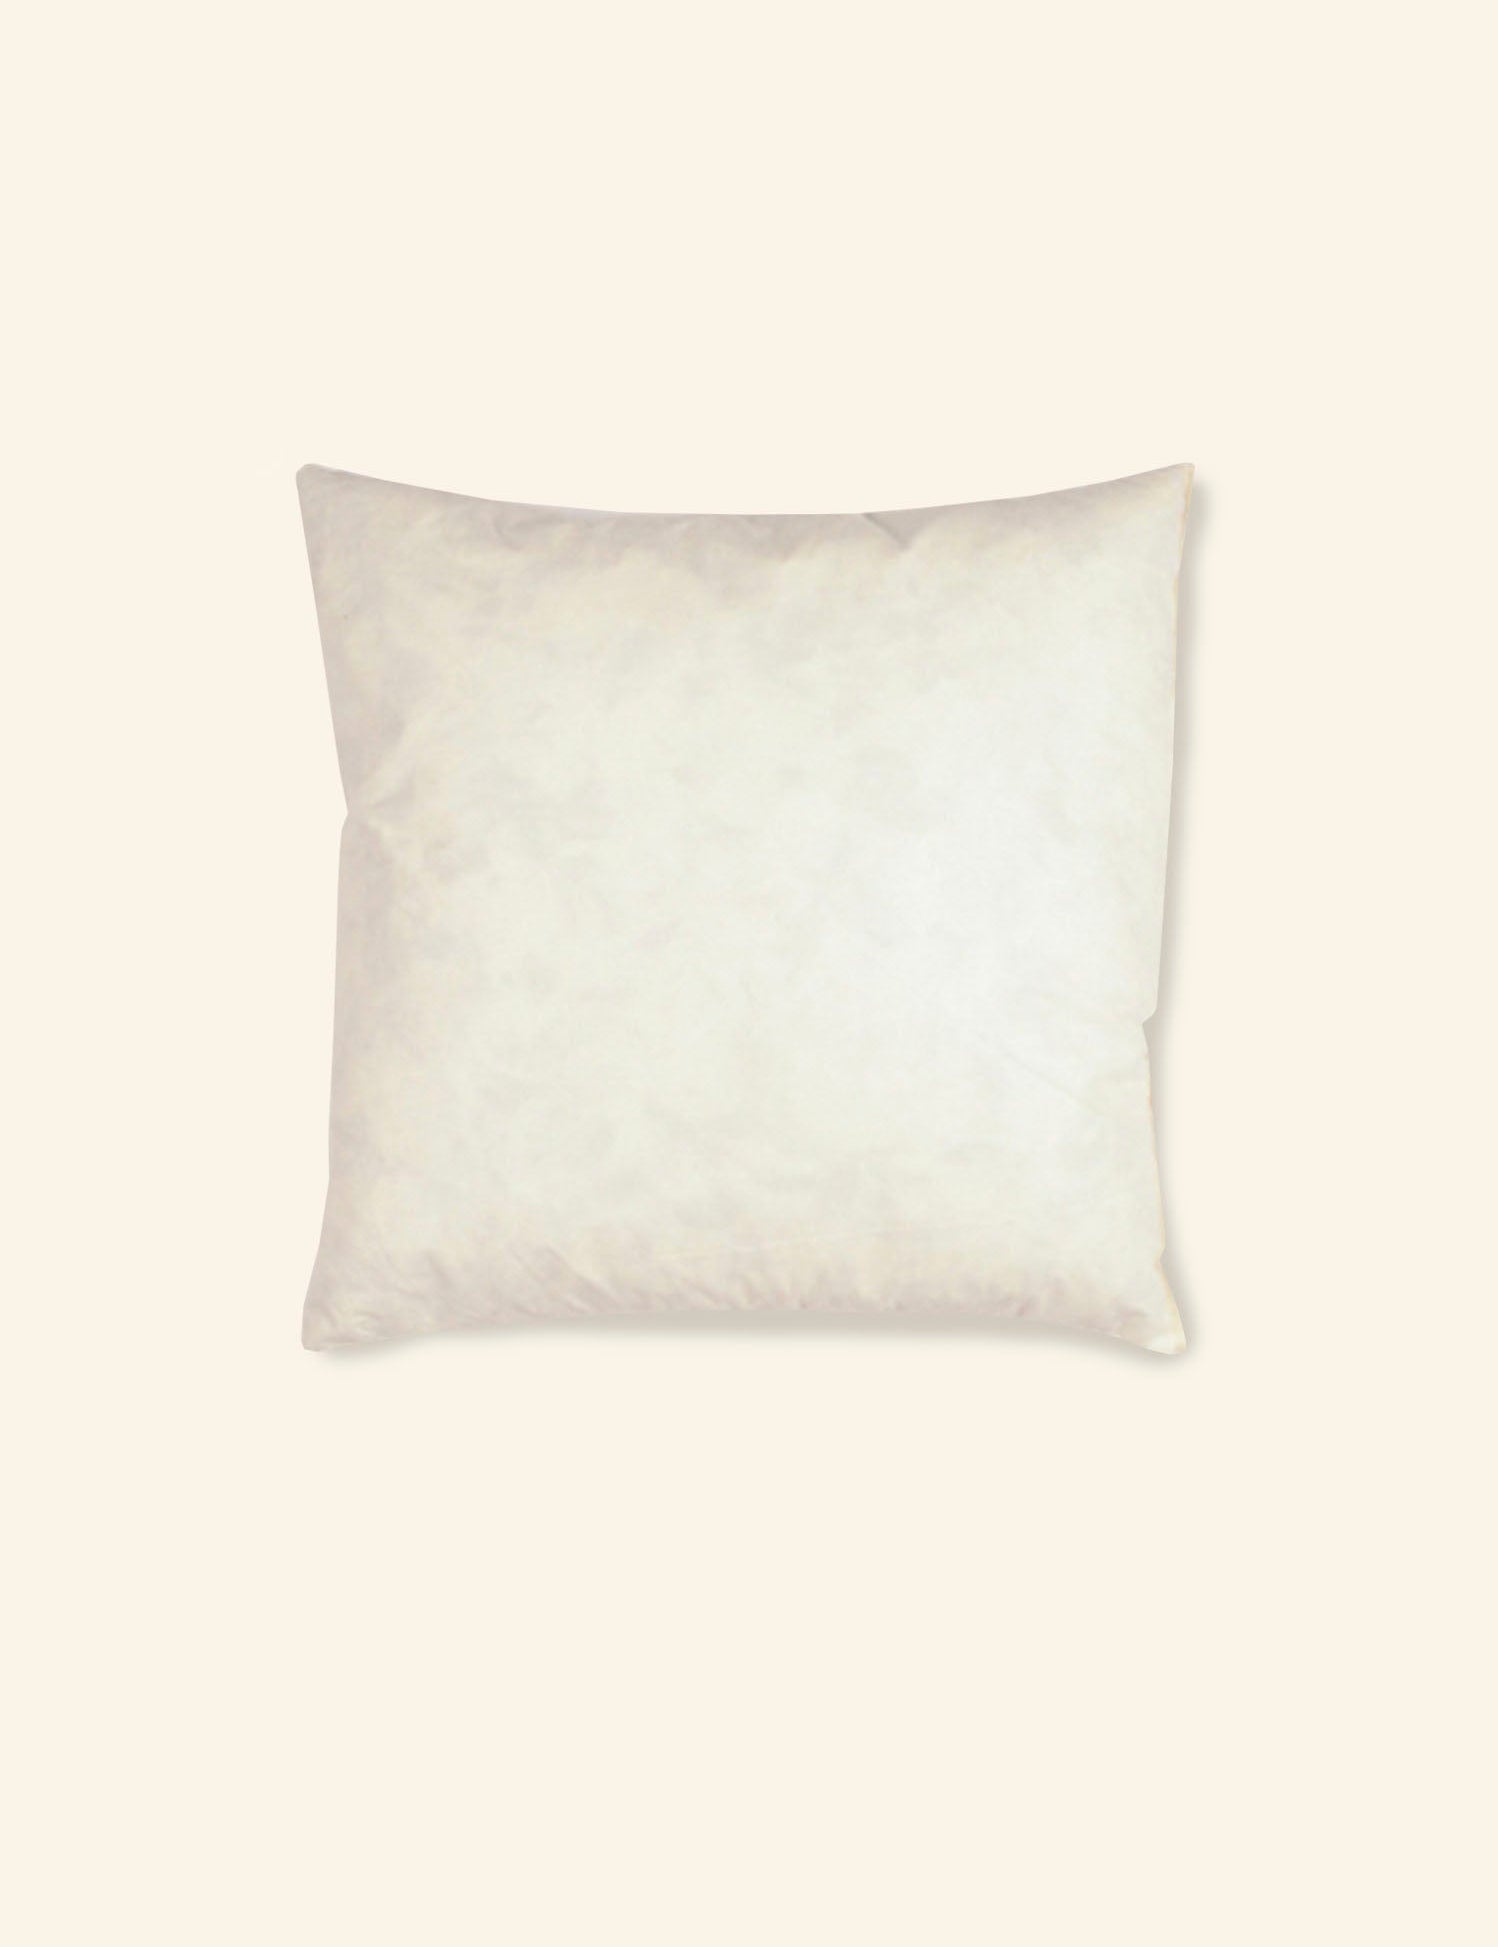 large-cushion-pad.jpg